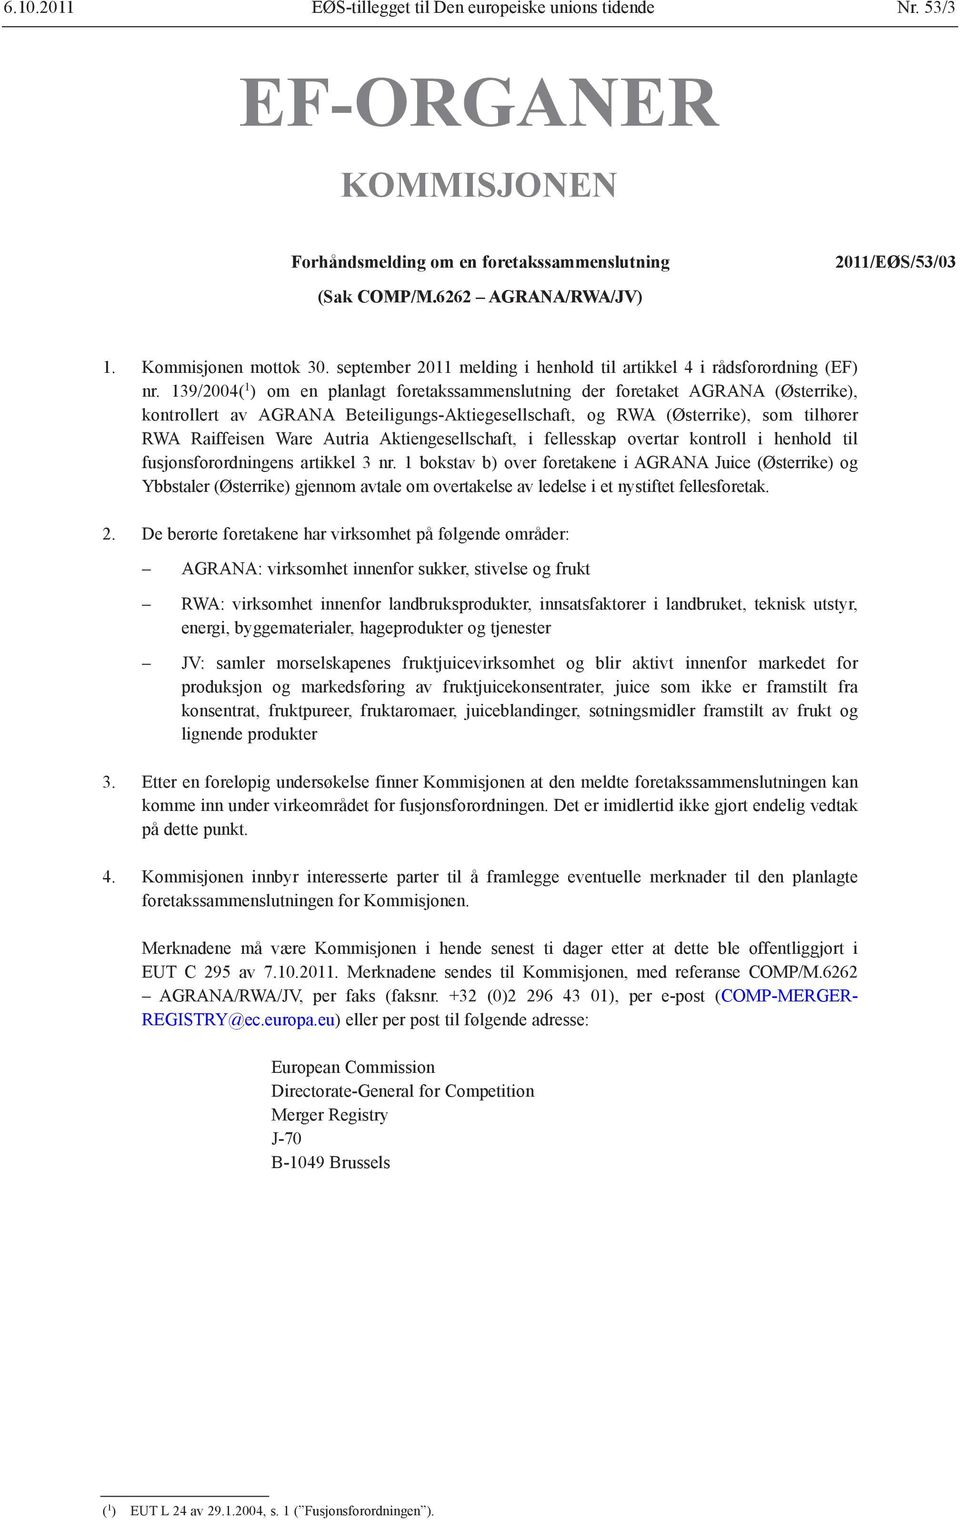 139/2004( 1 ) om en planlagt foretakssammenslutning der foretaket AGRANA (Østerrike), kontrollert av AGRANA Beteiligungs-Aktiegesellschaft, og RWA (Østerrike), som tilhører RWA Raiffeisen Ware Autria